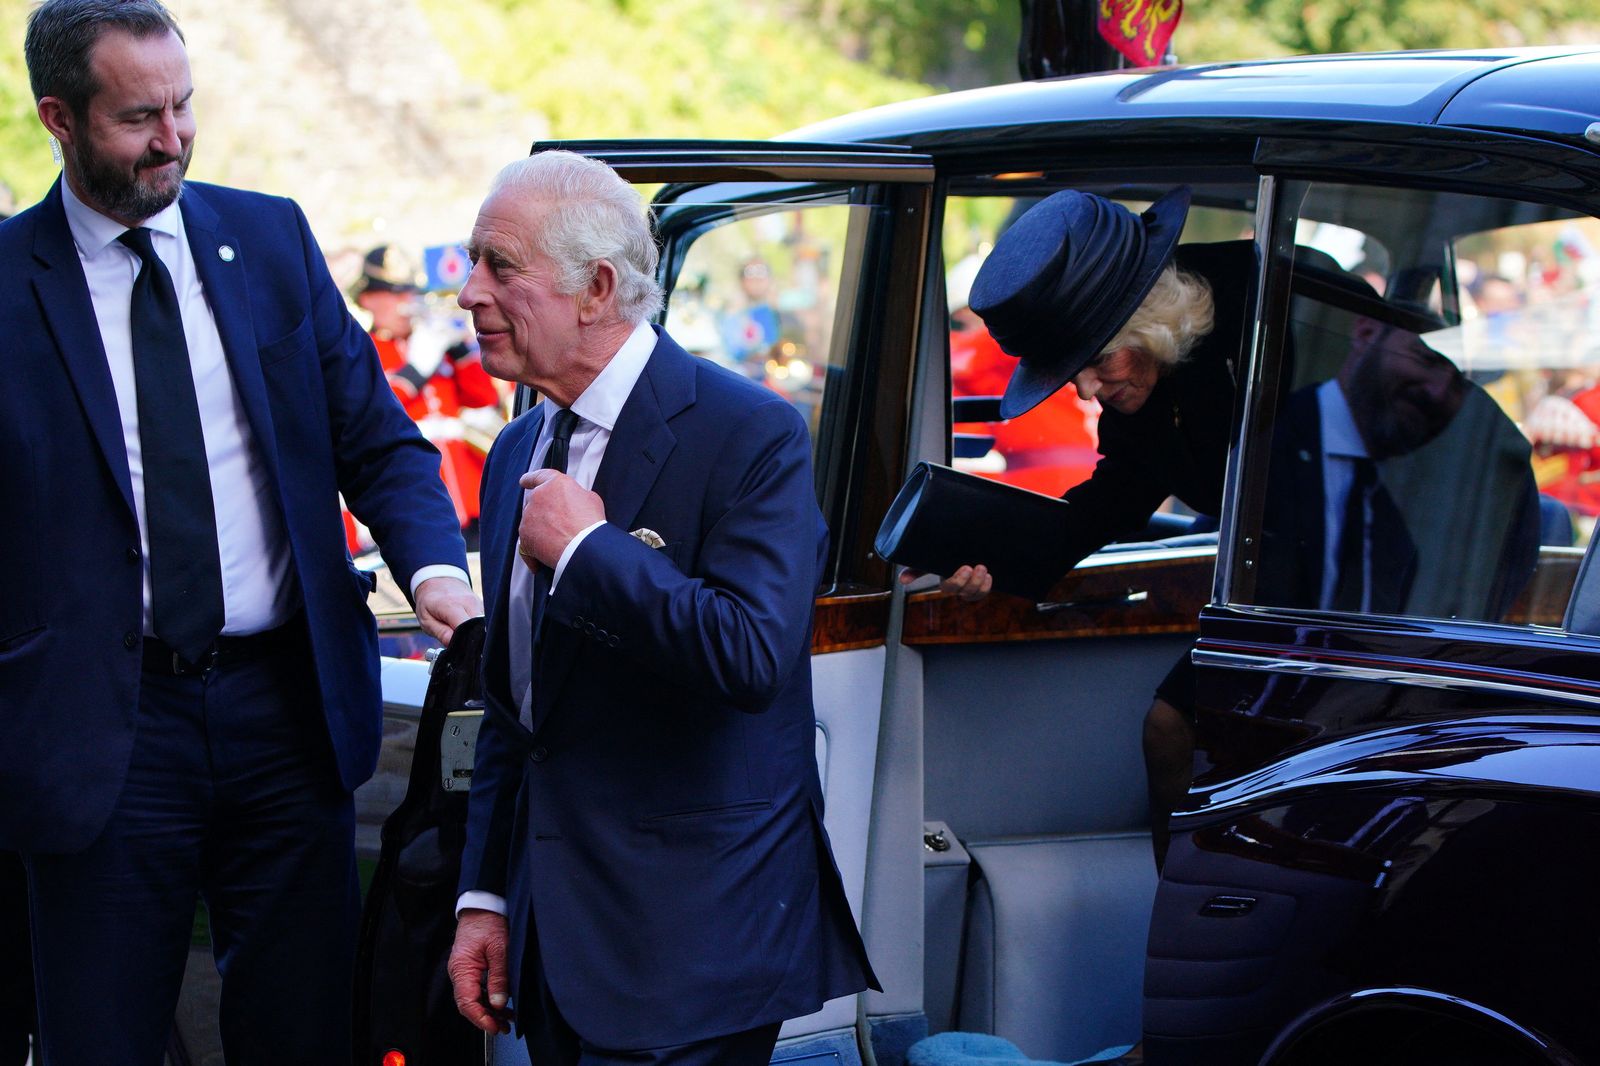 ملك بريطانيا تشارلز الثالث وقرينته الملكة كاميلا يصلان إلى قلعة كارديف في ويلز بريطانيا- 16 سبتمبر 2022 - via REUTERS